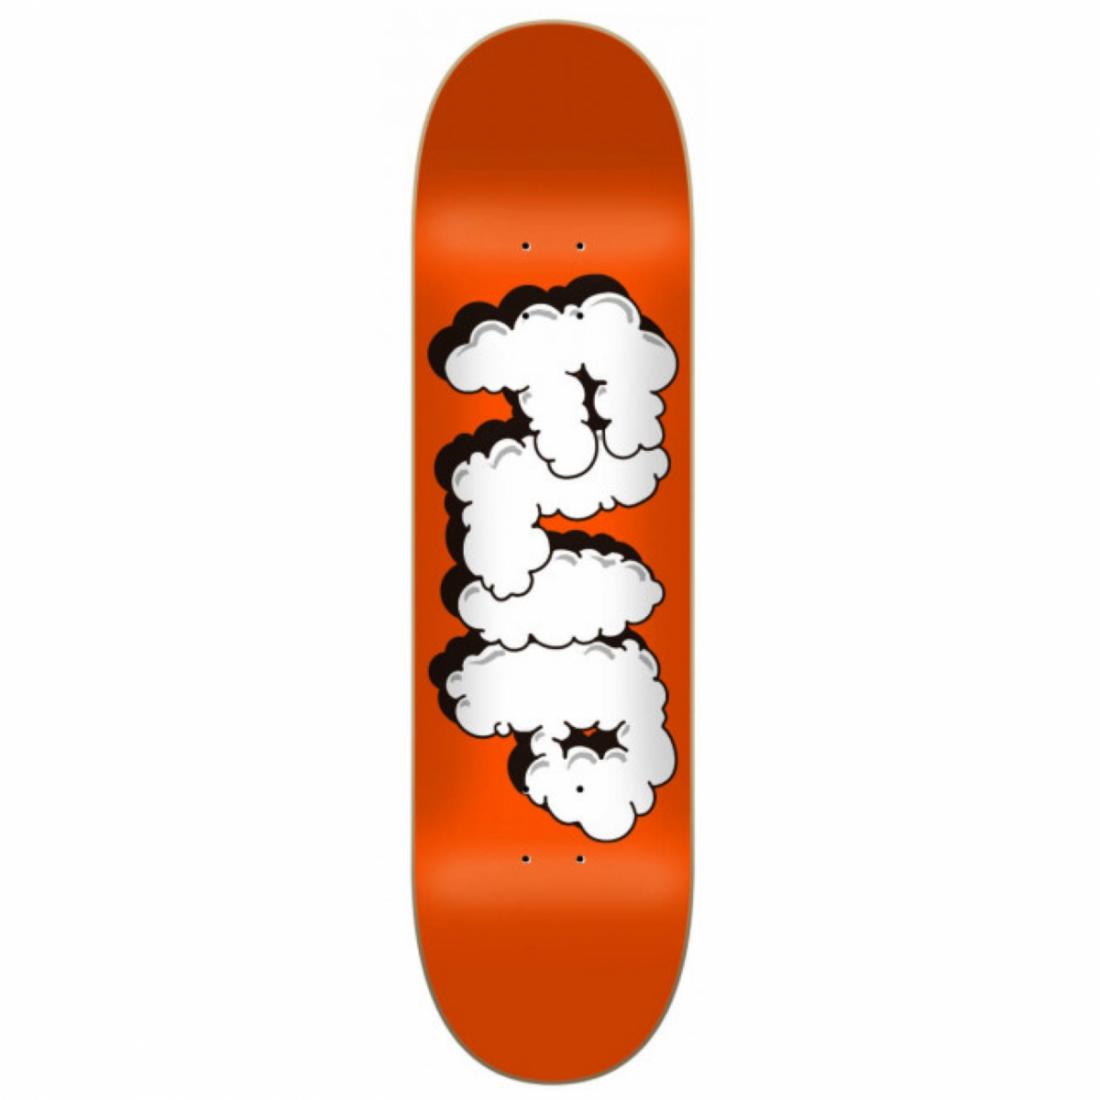 Дека для скейта FLIP SMOKIN' DECK Flip, цвет оранжевый, размер 8.125